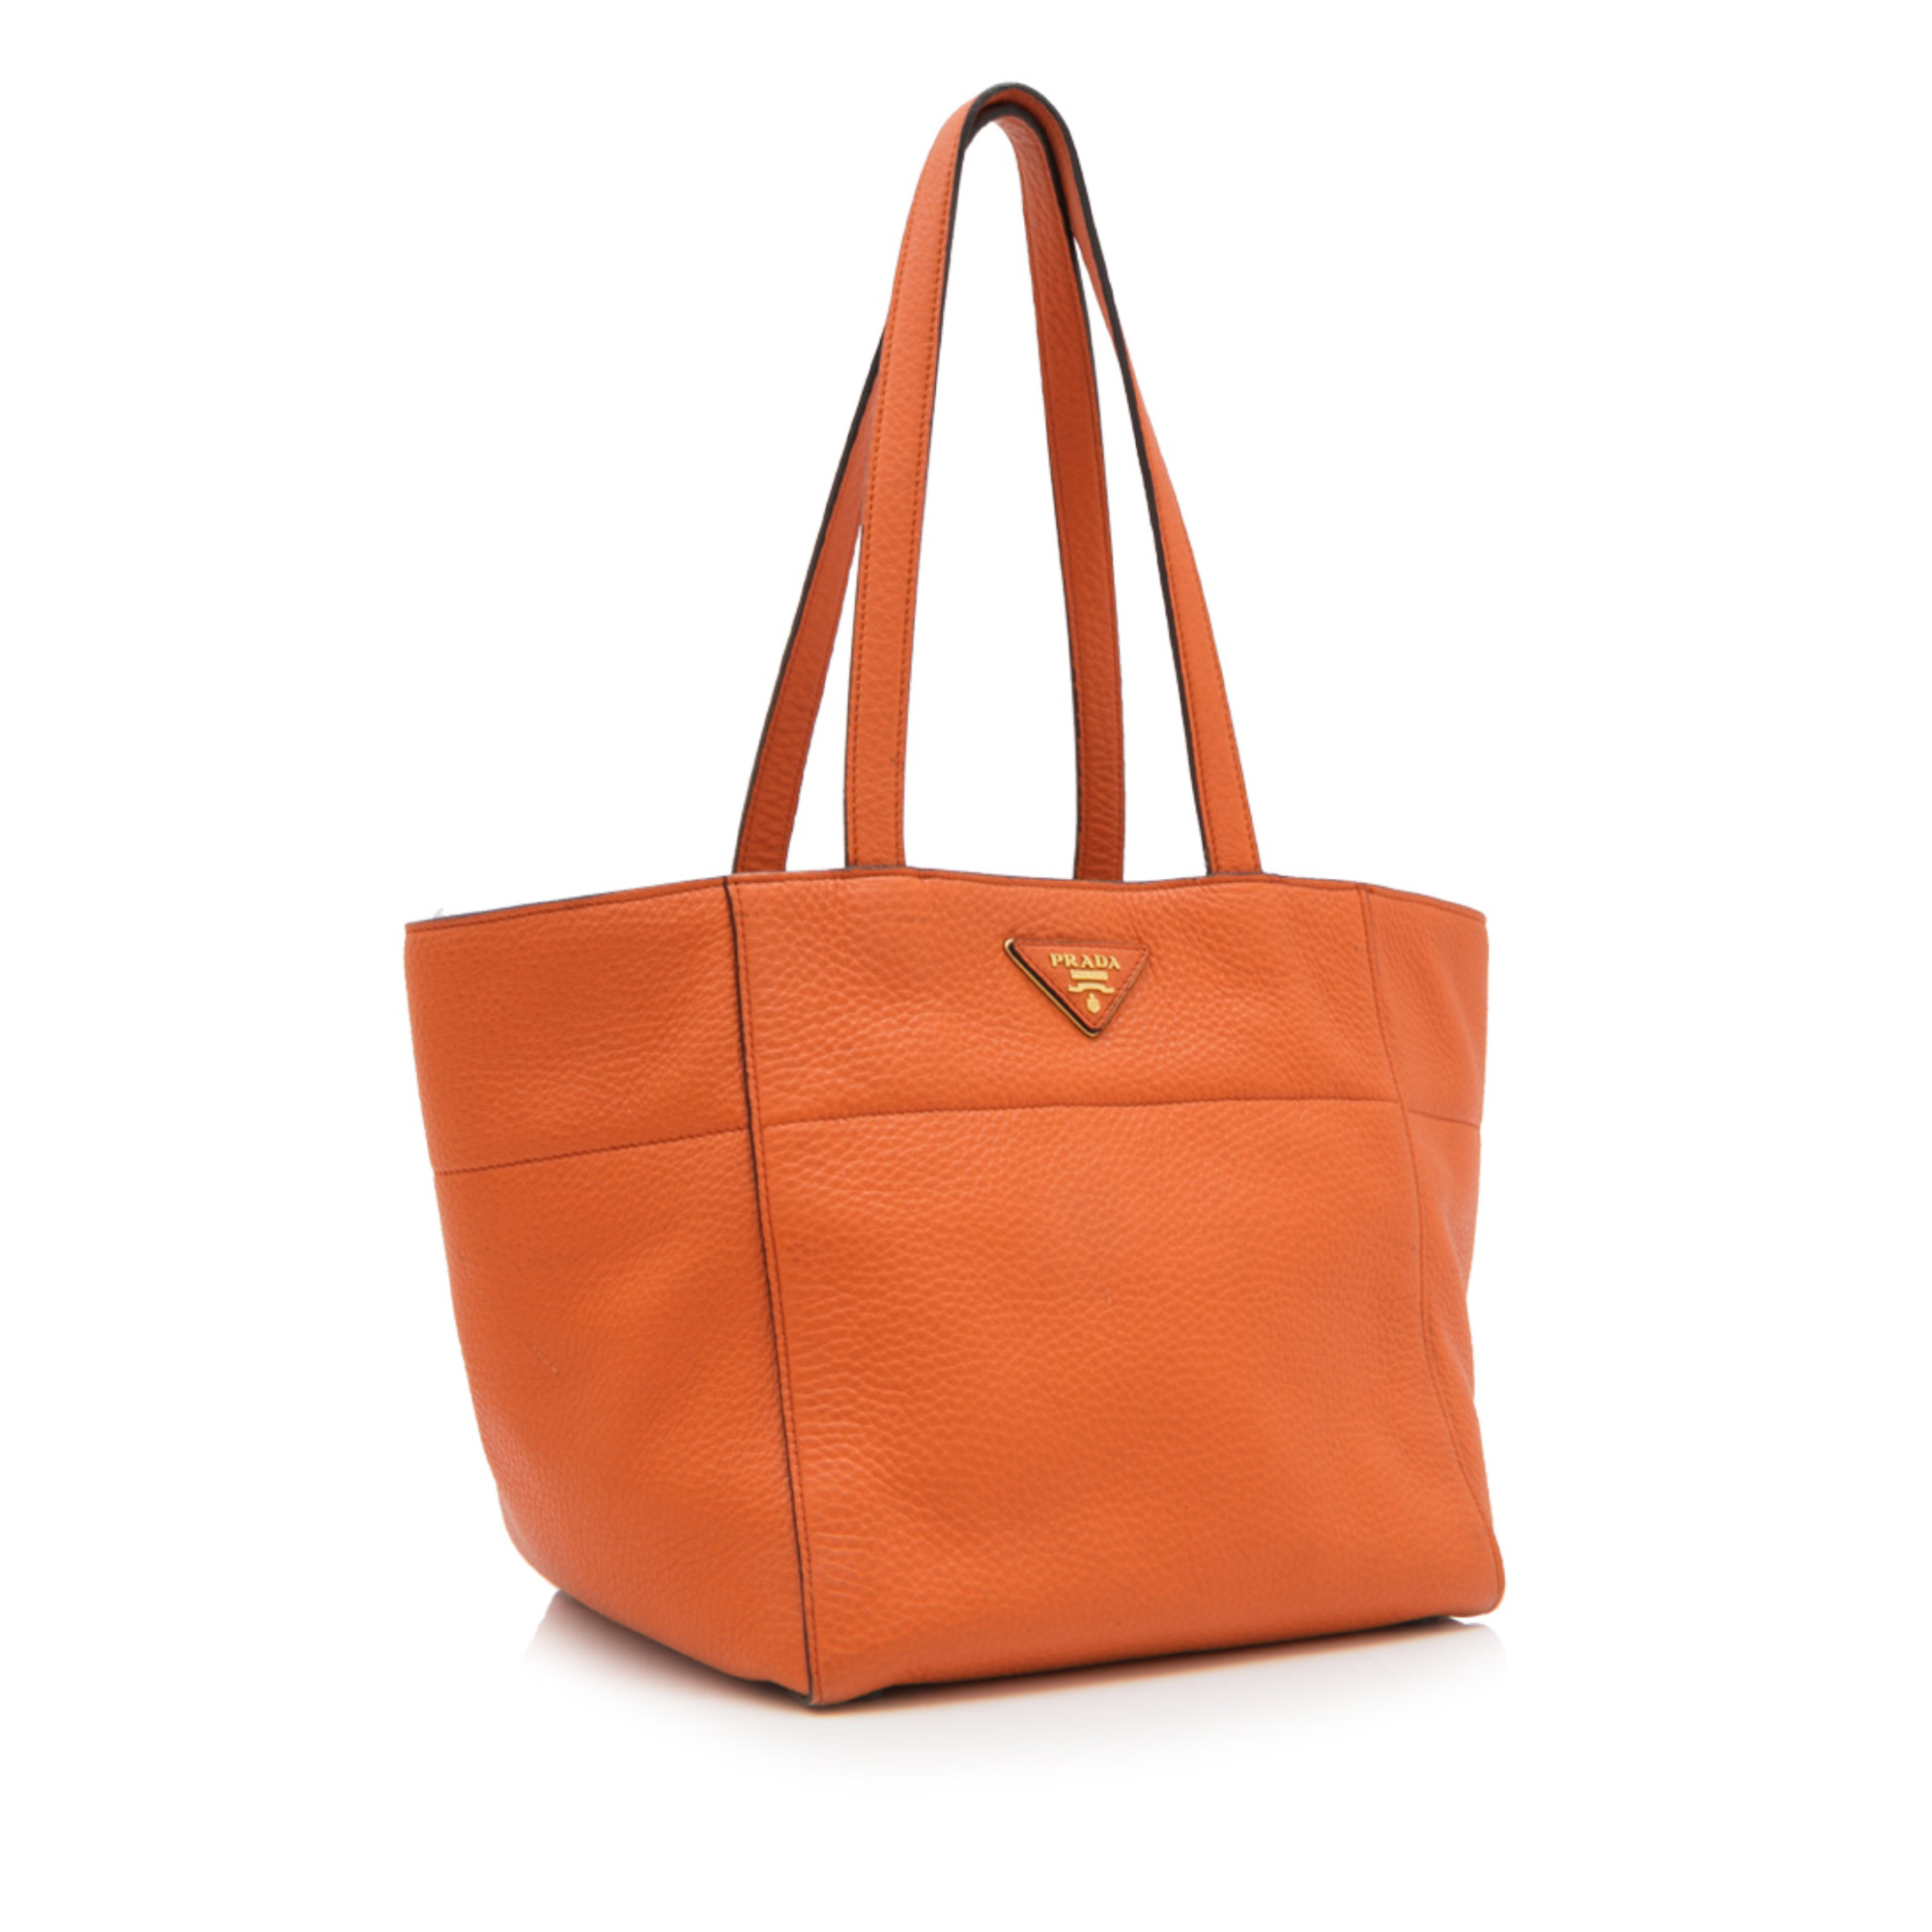 Prada Metallic Vitello Daino Leather Tote Bag, this tote bag features a vitello daino leather - Image 2 of 5